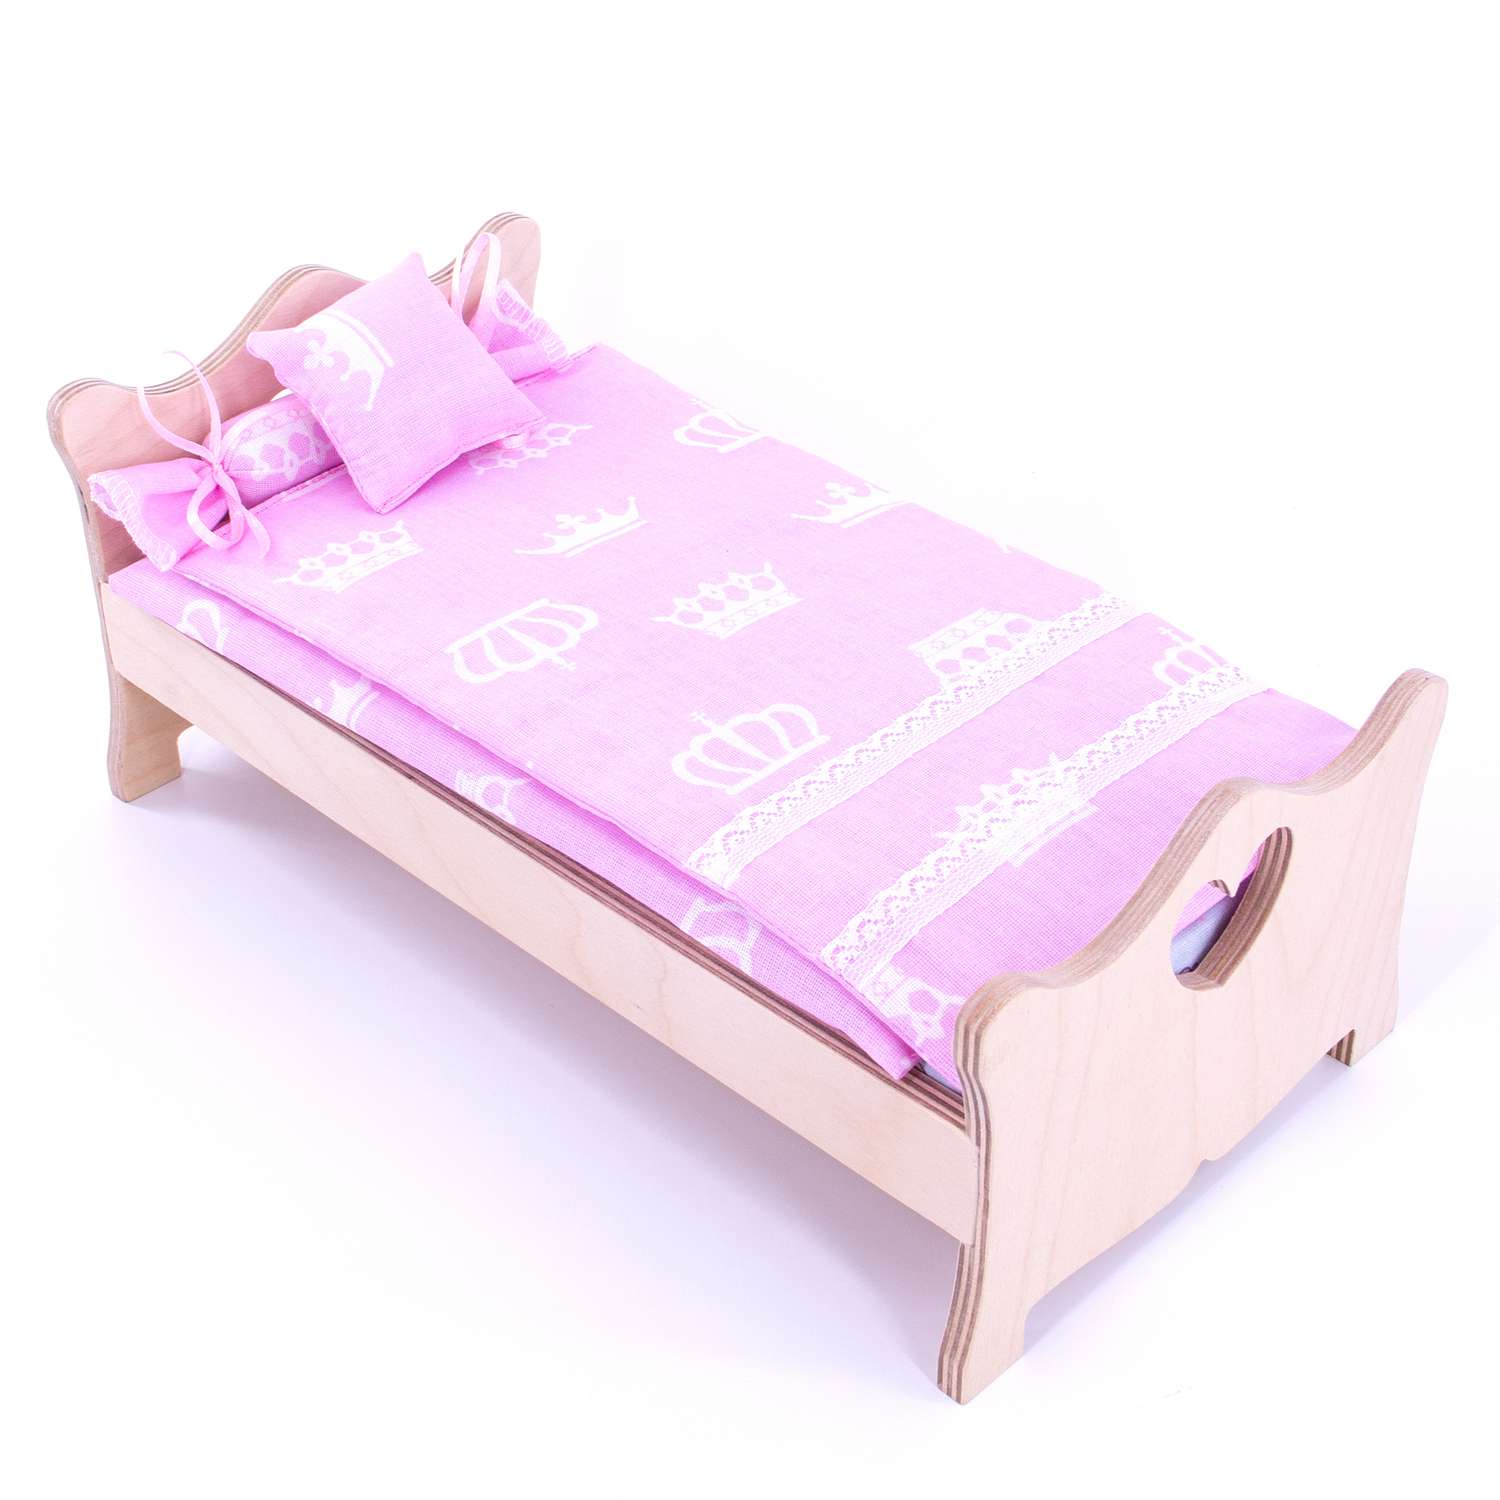 Комлпект постельного белья Модница для куклы 29 см 2002 розовый 2002розовый - фото 5